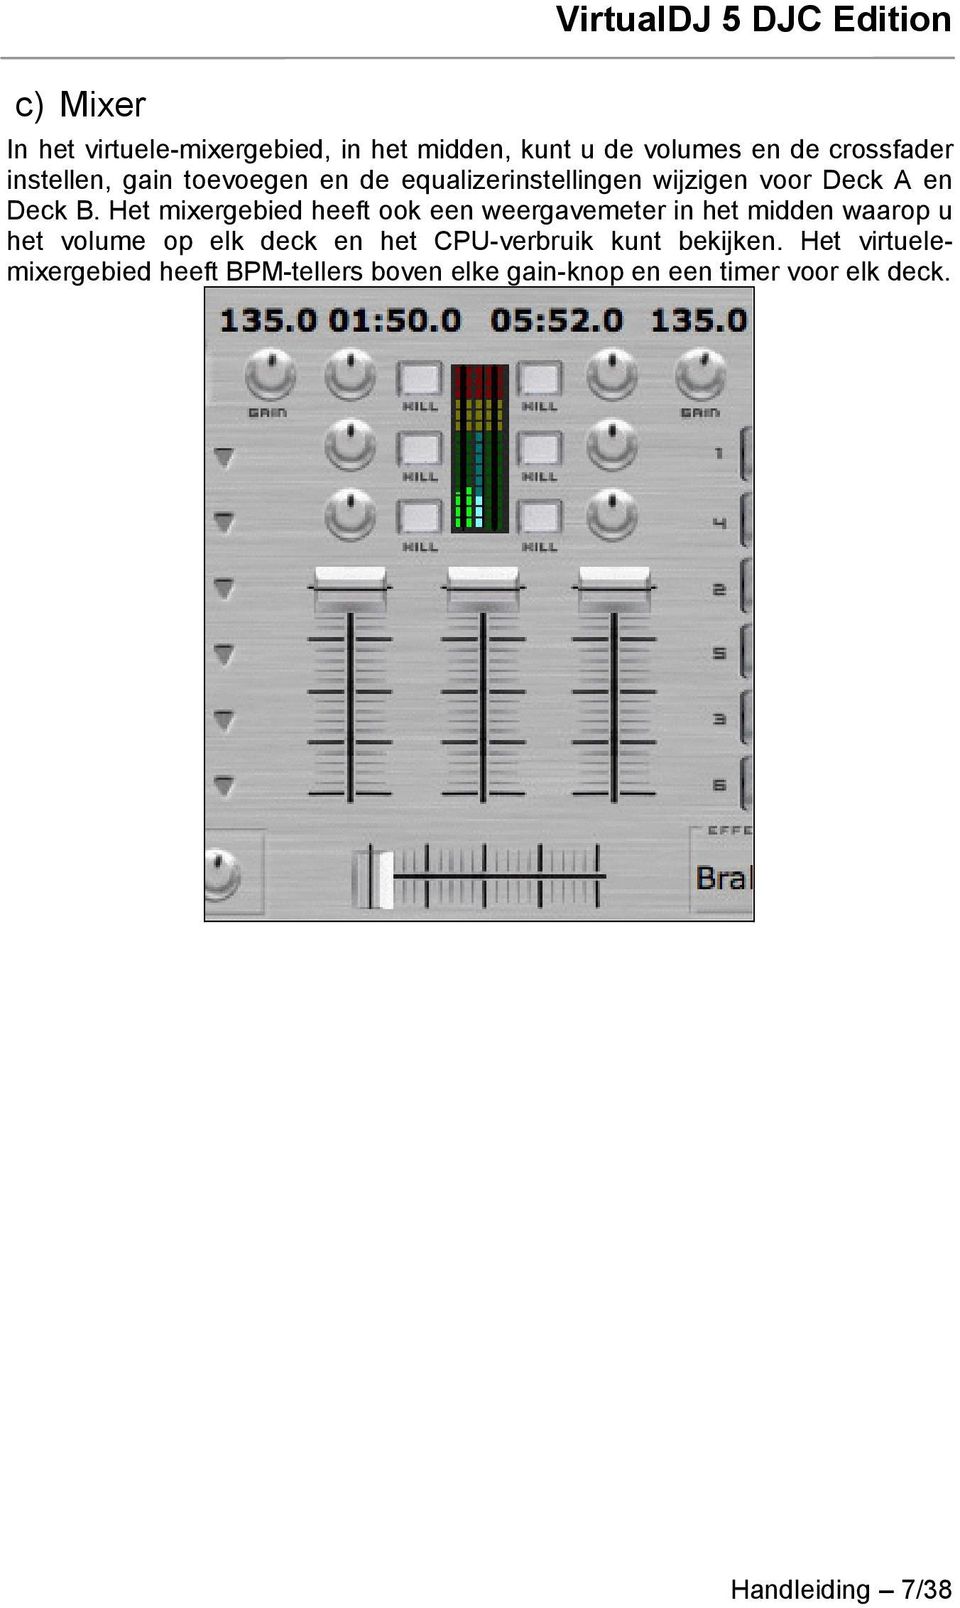 Het mixergebied heeft ook een weergavemeter in het midden waarop u het volume op elk deck en het